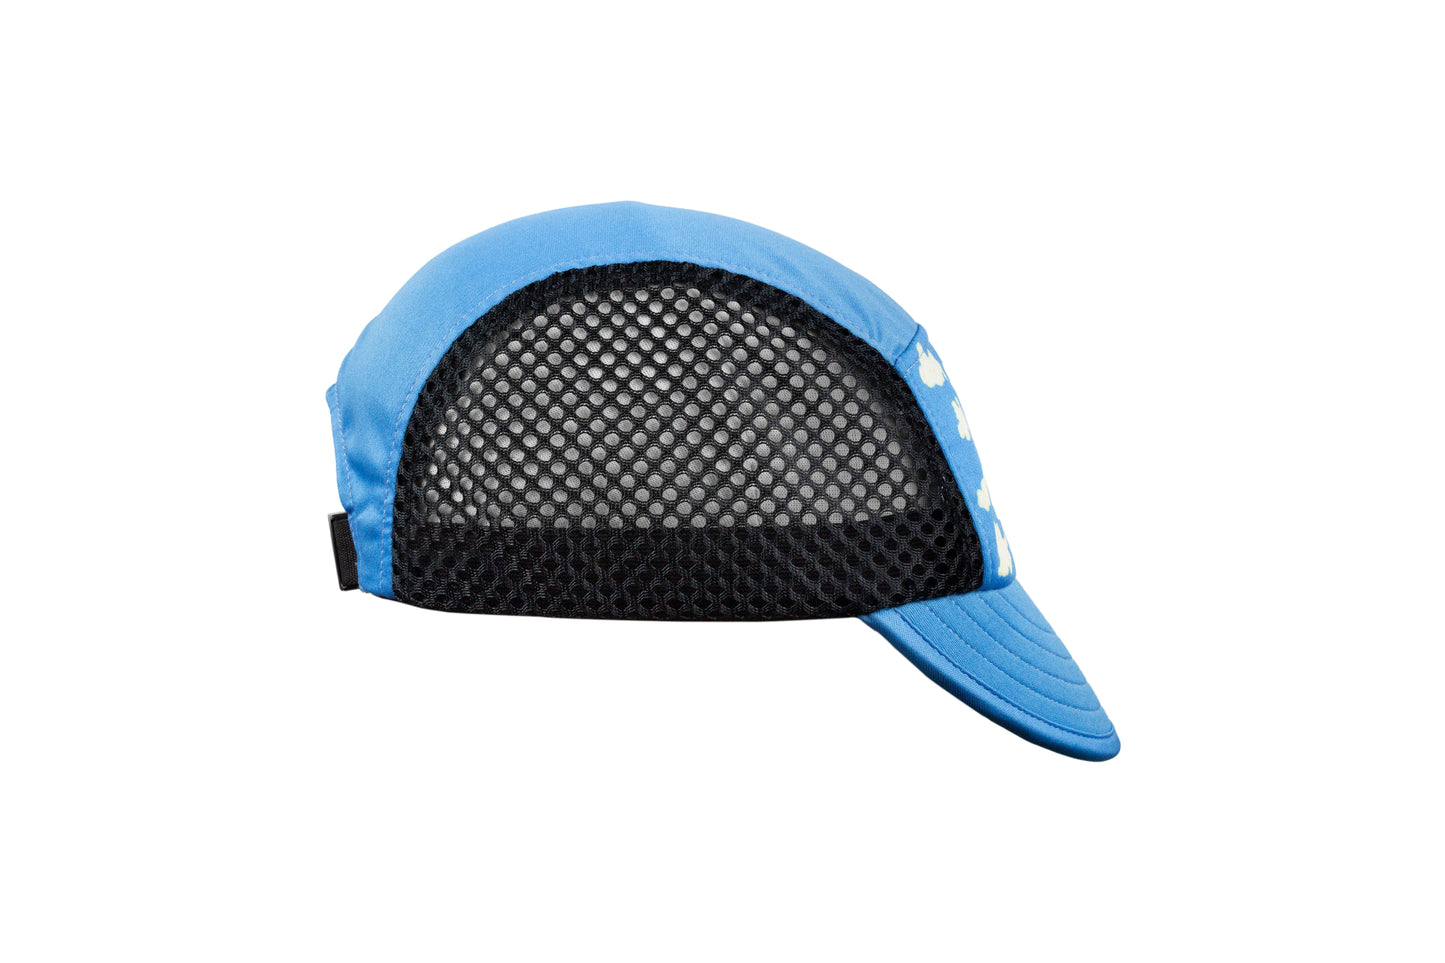 GW “POPCORN” Mesh Cycling cap ( Dodger Blue)